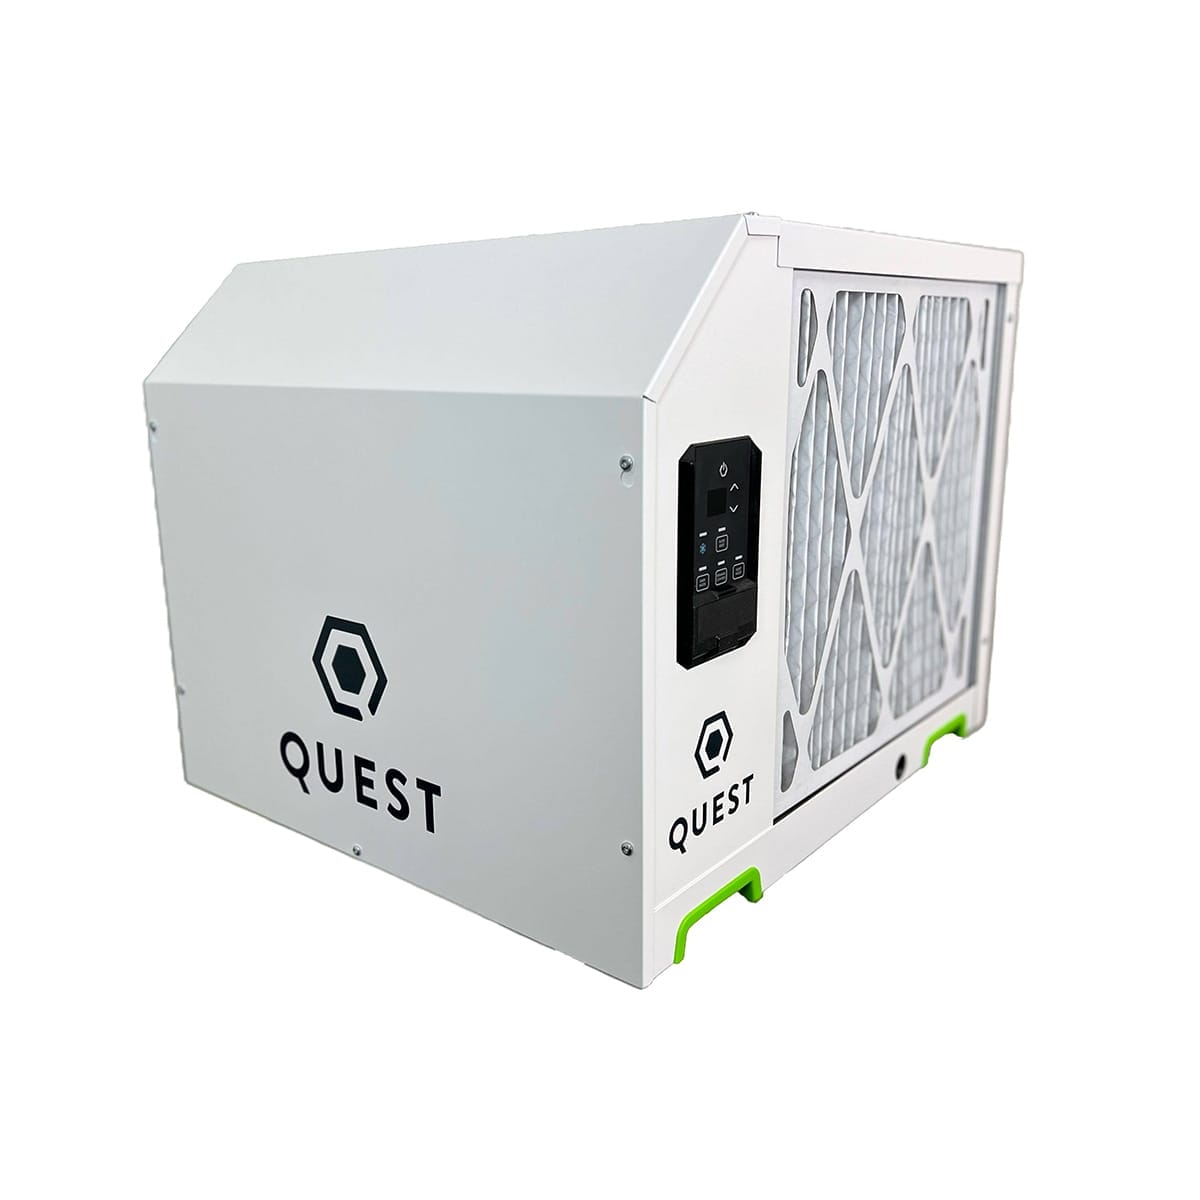 Quest 225 208-230V Dehumidifier